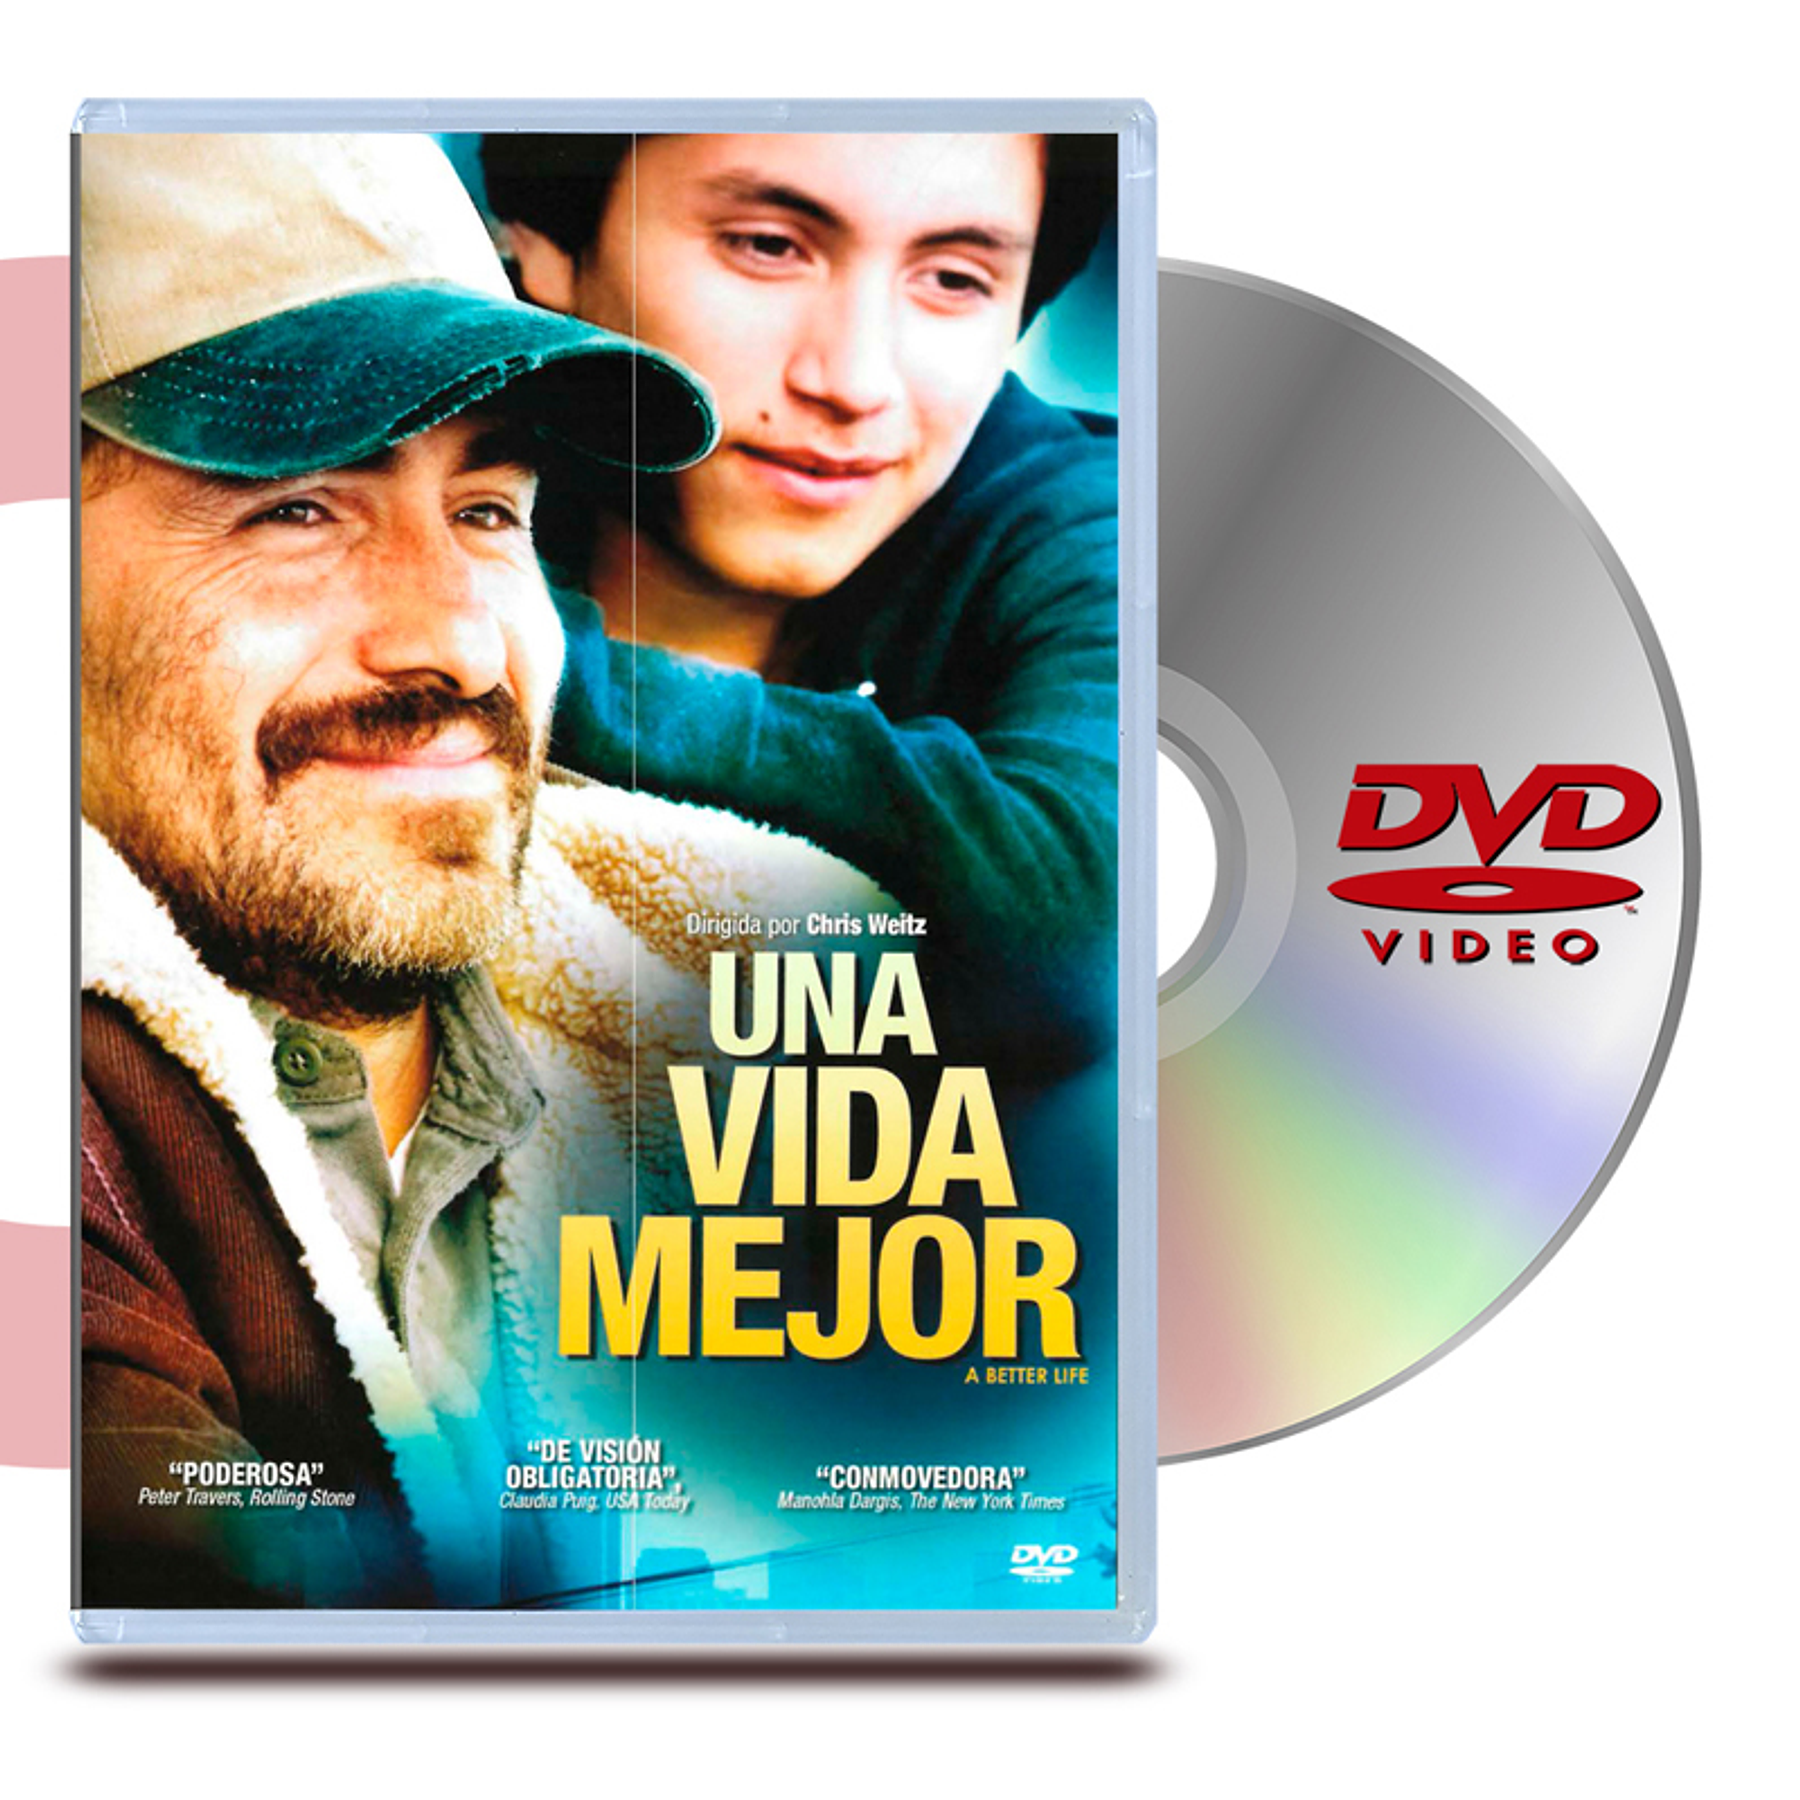 DVD UNA VIDA MEJOR